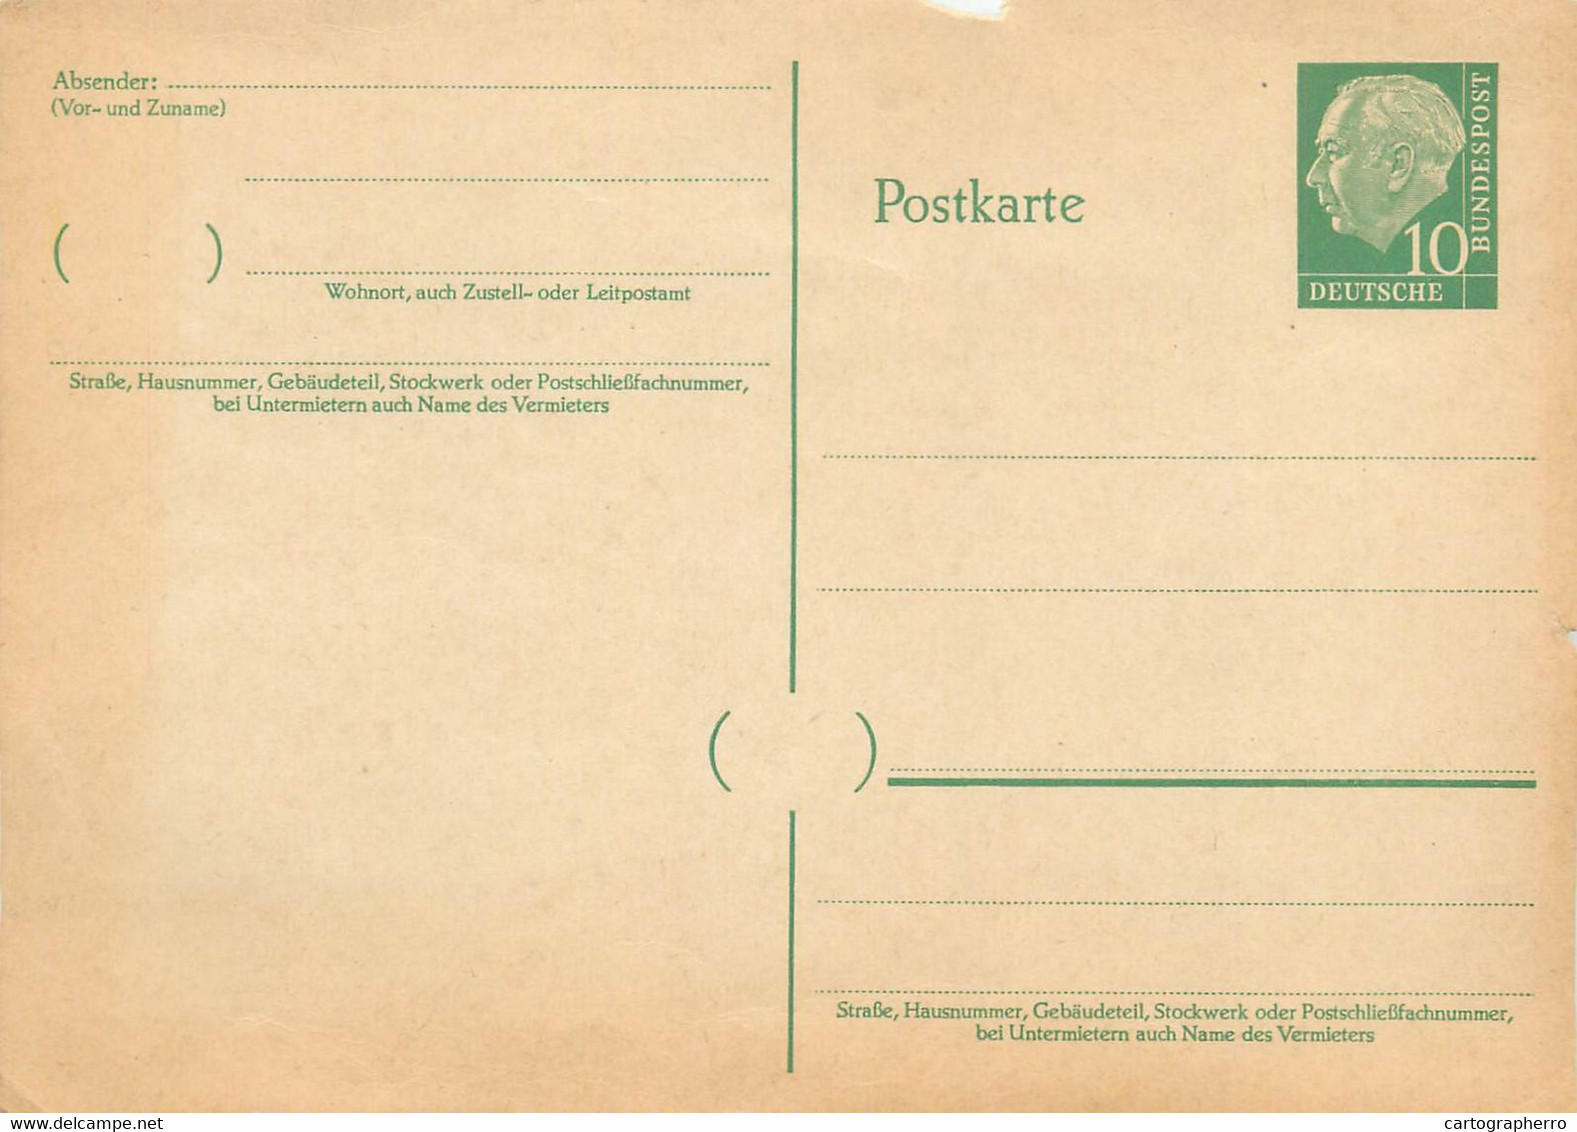 Postkarte Deutsche Bundespost Stationery Postal 10 X 15 Cm - Postkarten - Ungebraucht